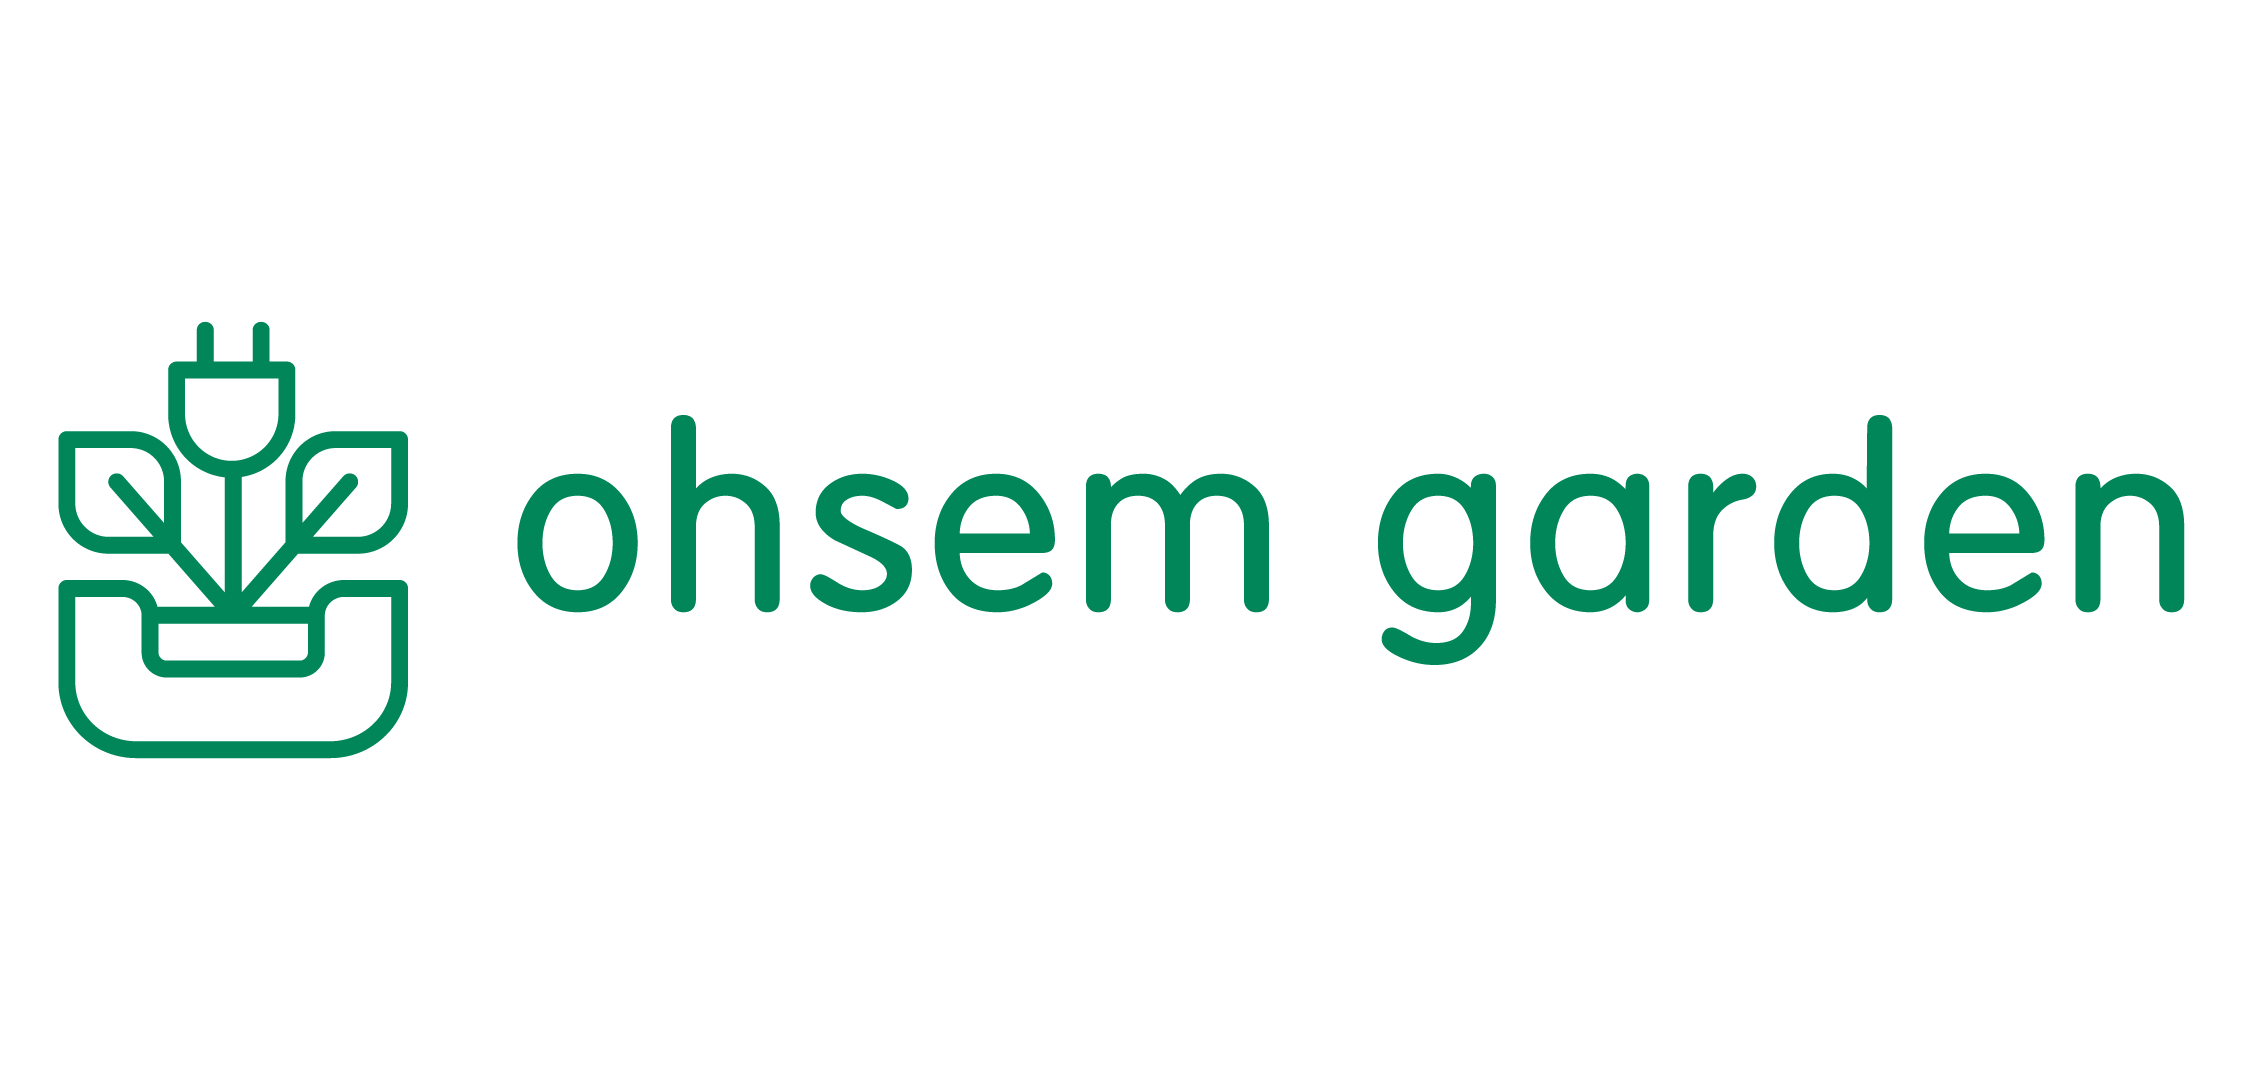 Ohsem Garden - Kids Urban Farming Specialist